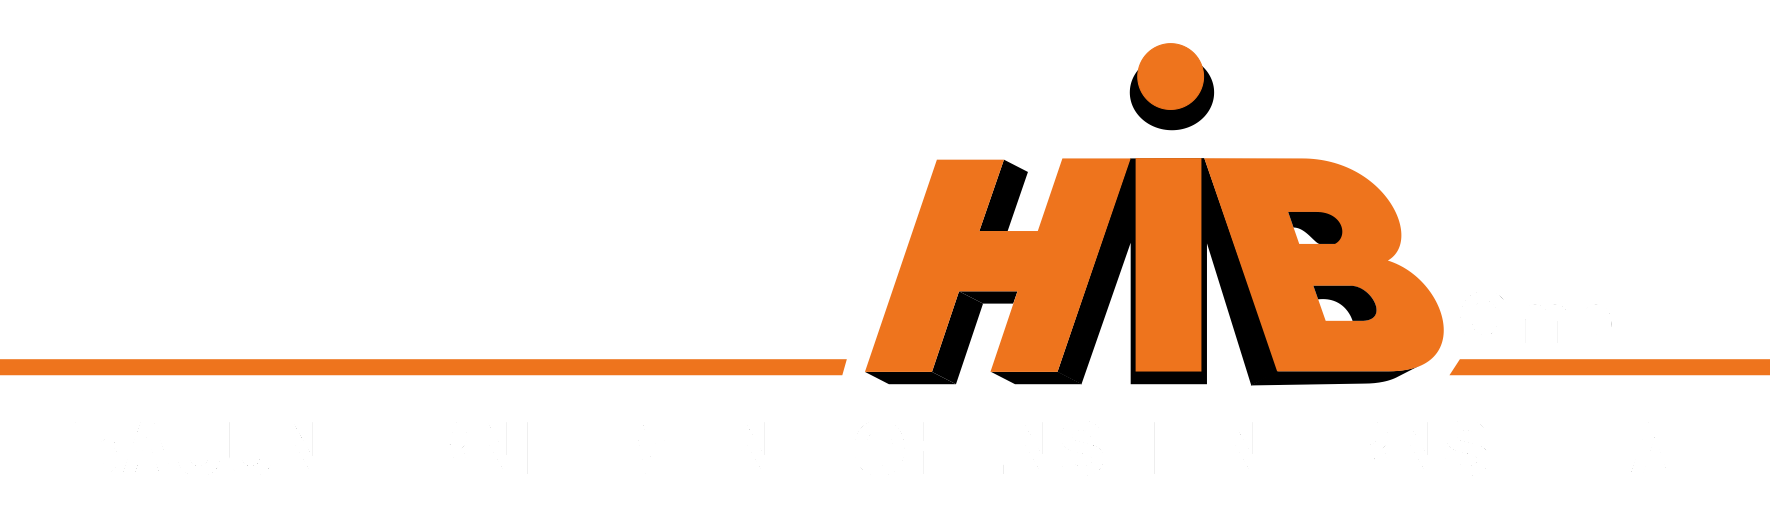 HIB-GmbH